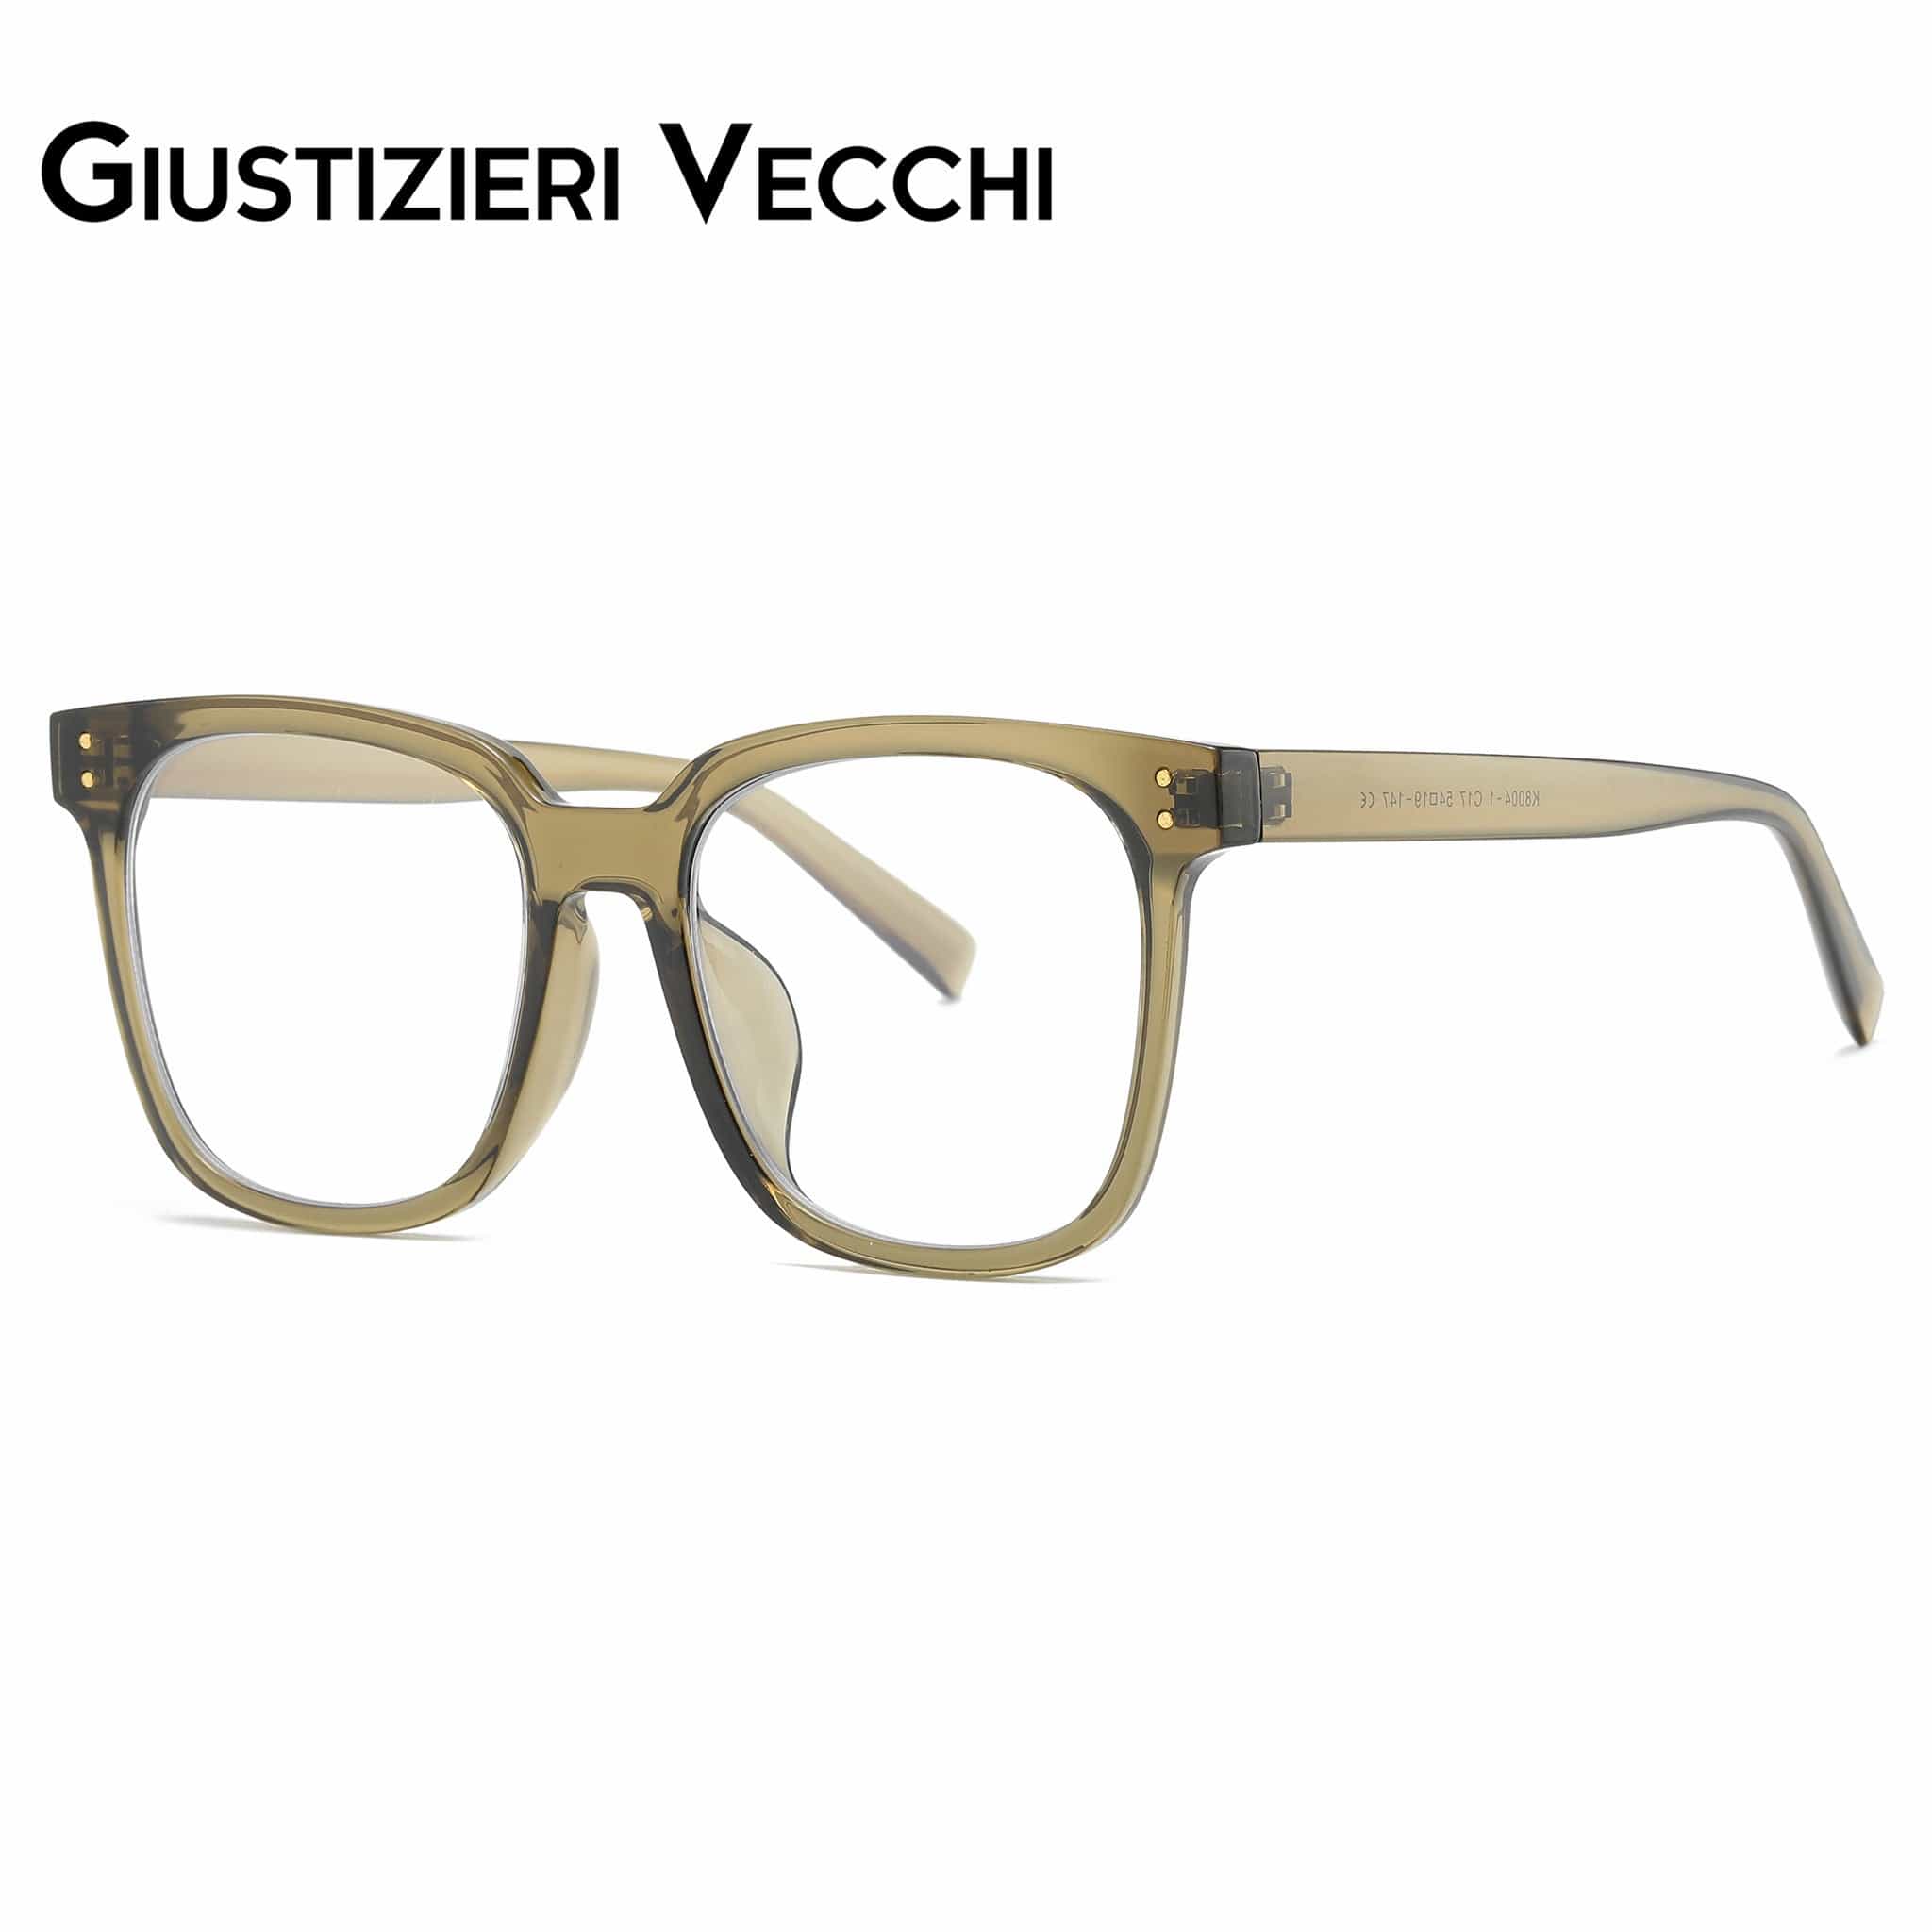 GIUSTIZIERI VECCHI Eyeglasses Gioia Duo